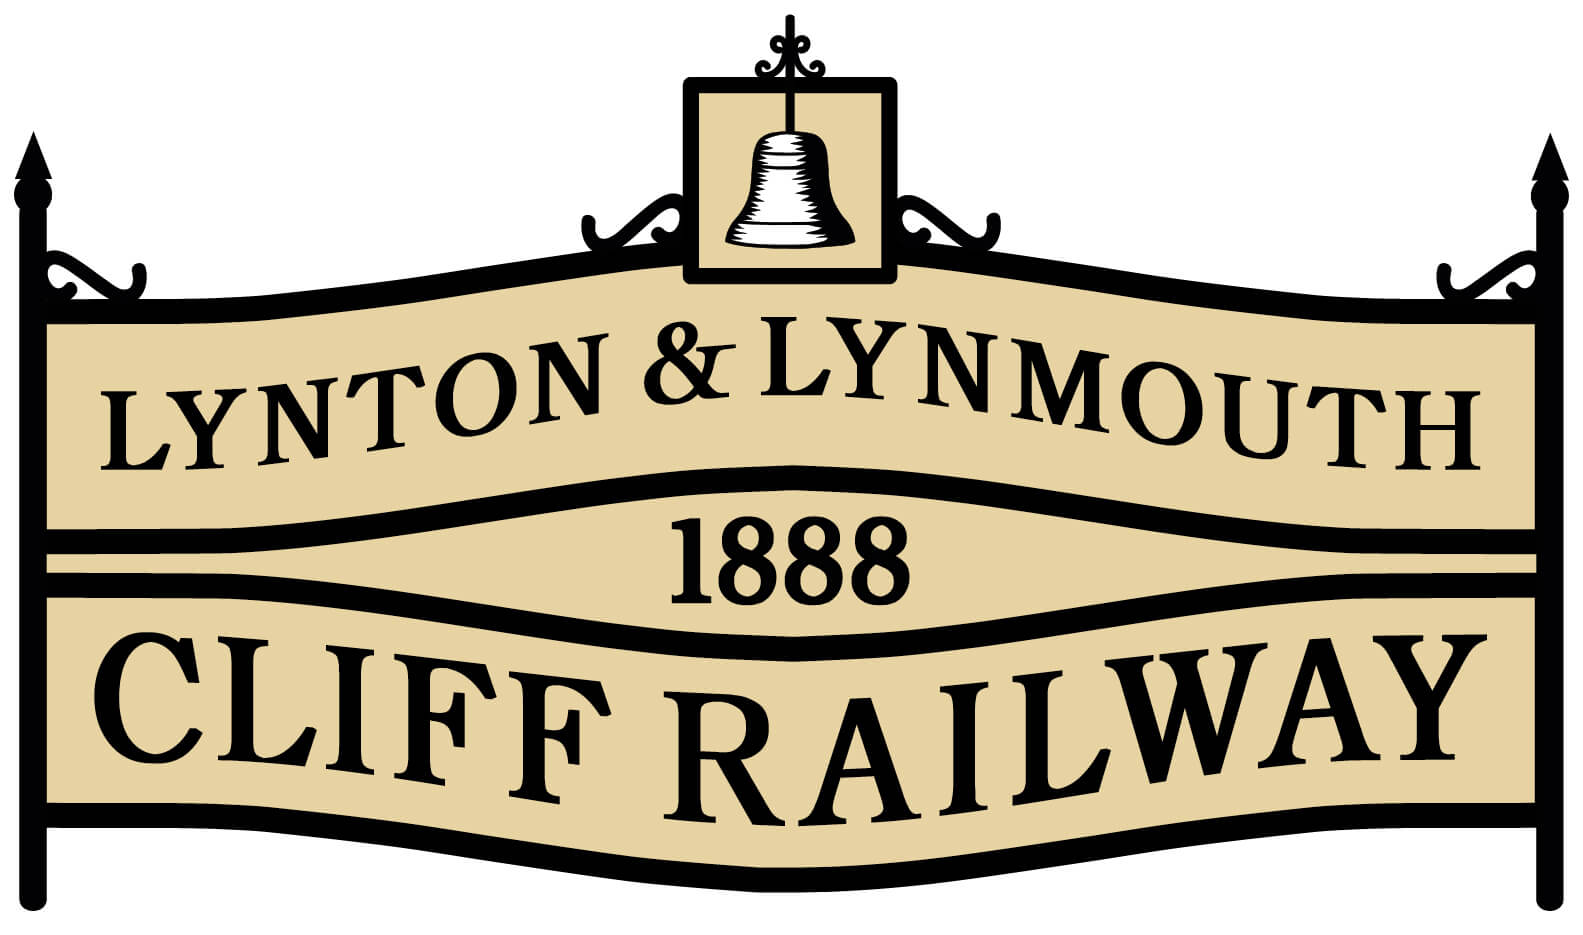 Lynton Lynmouth Cliff Railway